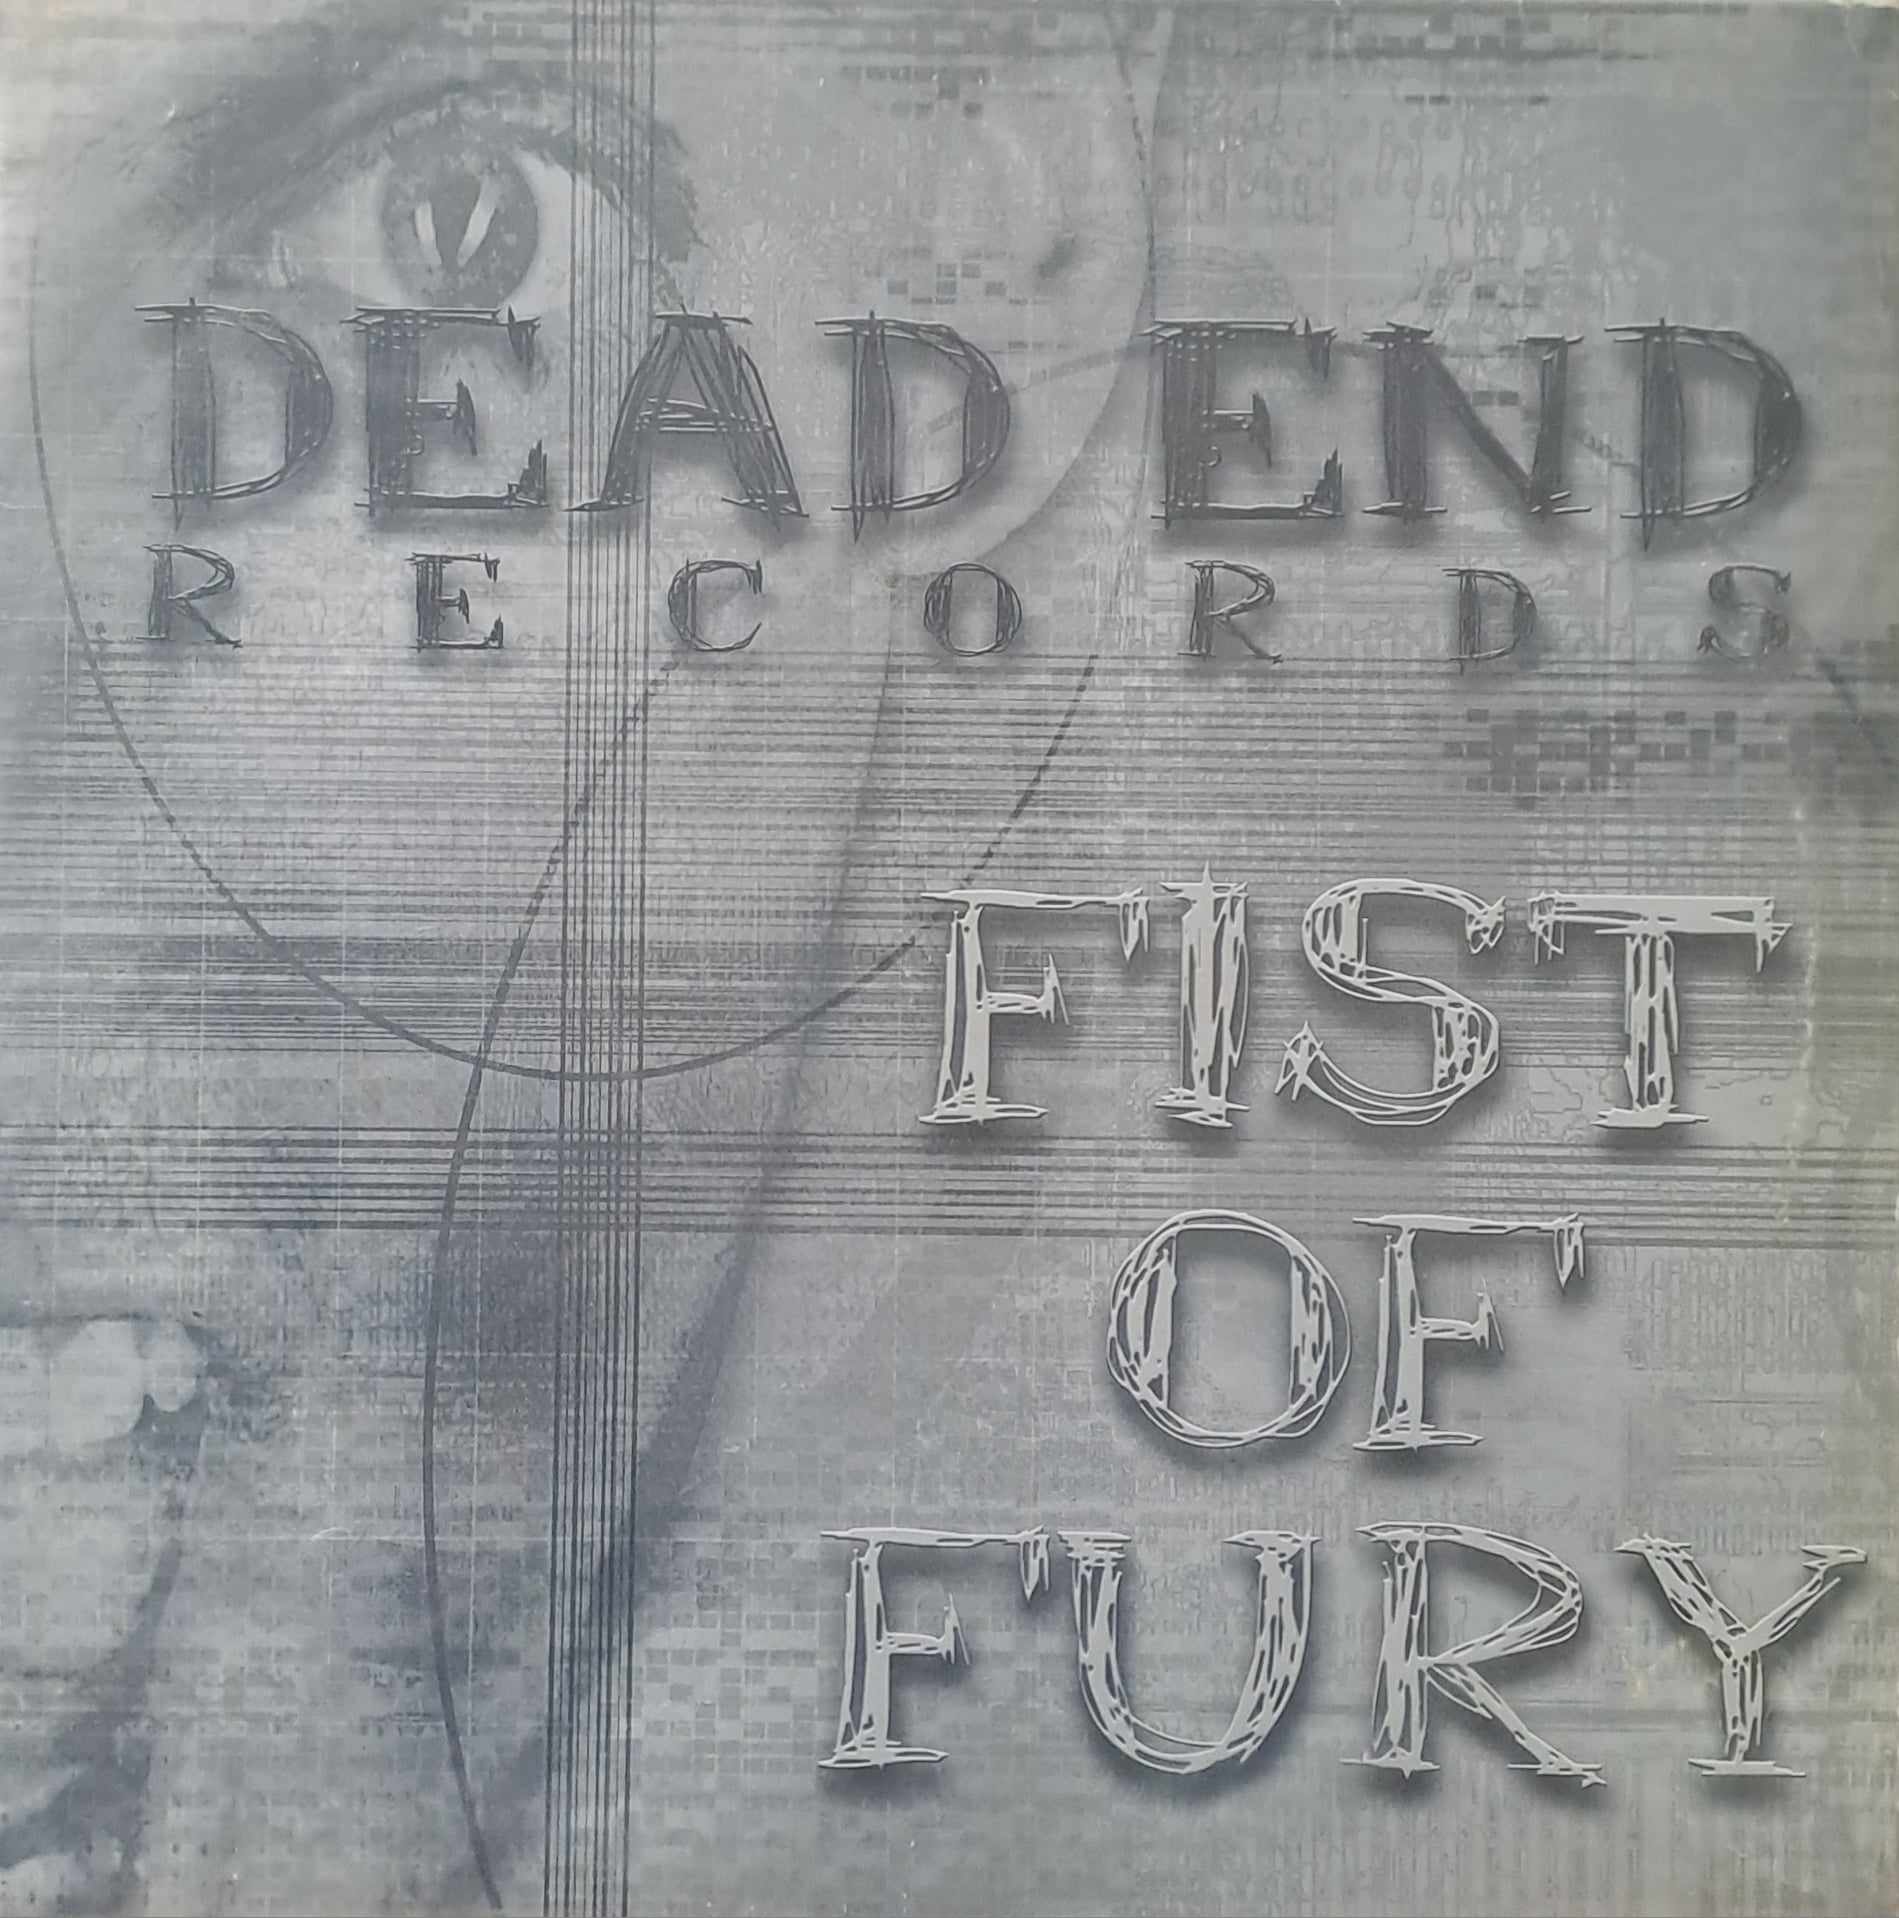 Dead End Records 13 - vinyle hardcore